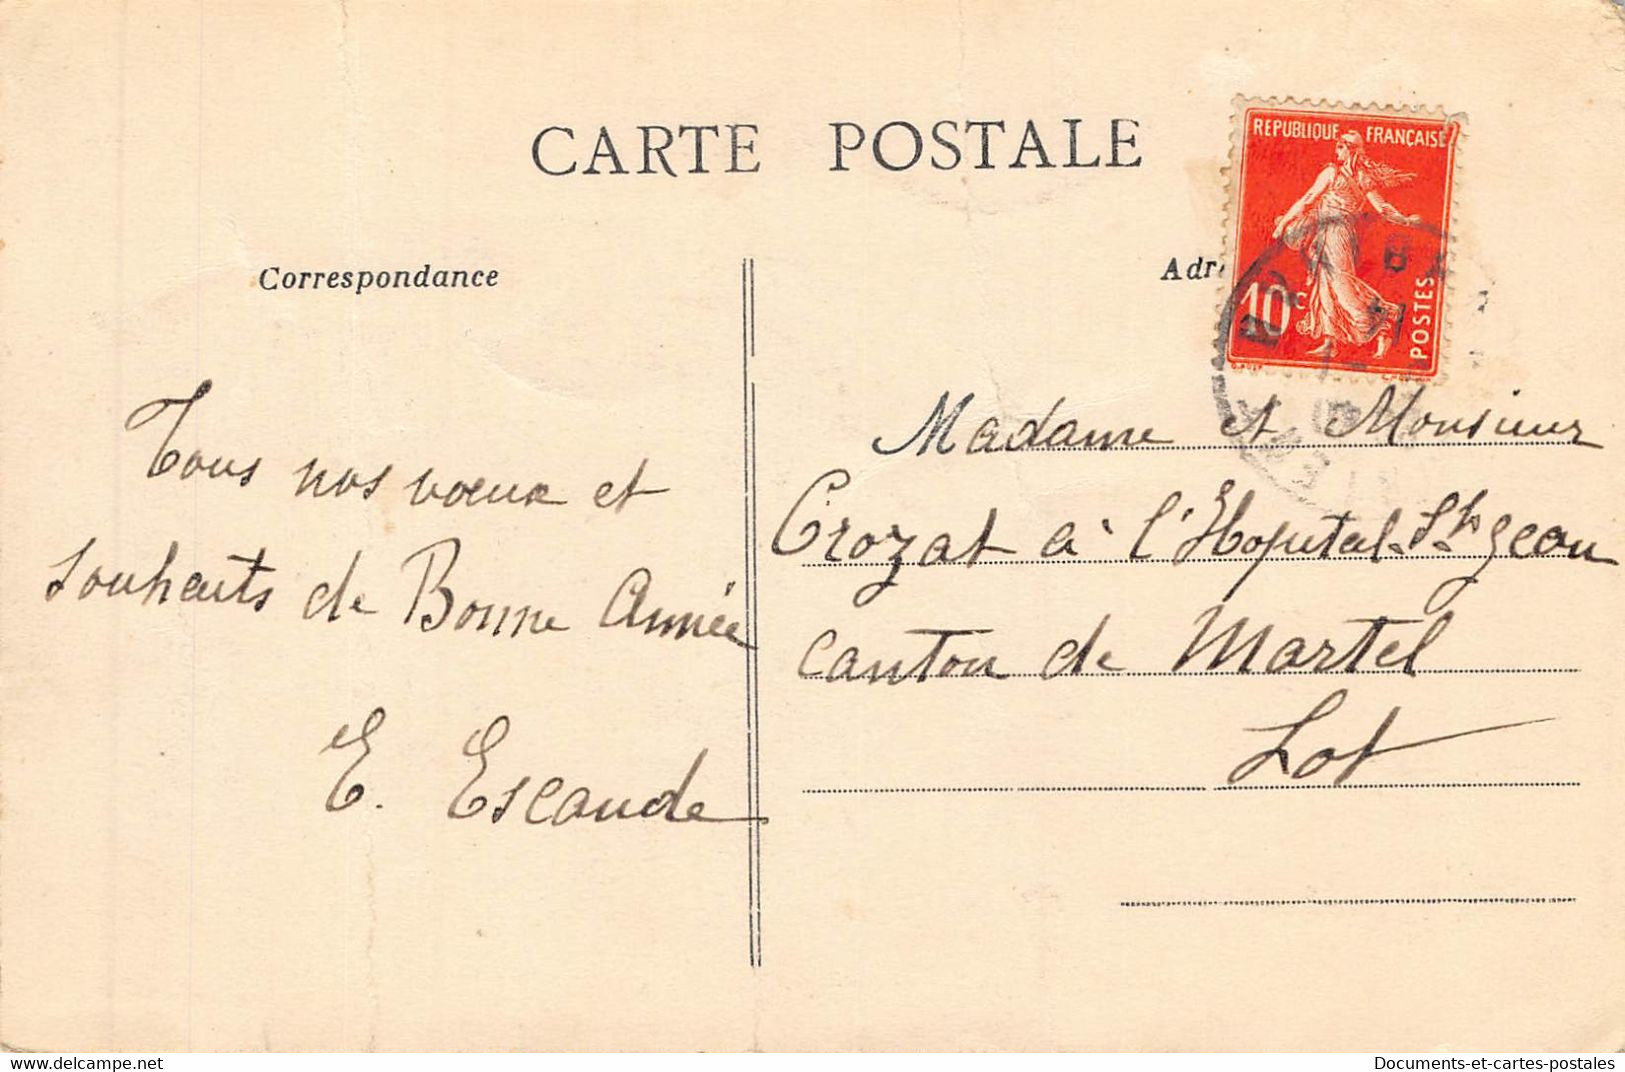 Carte Postale Ancienne Dept Lorient Un Coin Du Bassin ( Beau Plan ) Leger Pli - Lorient